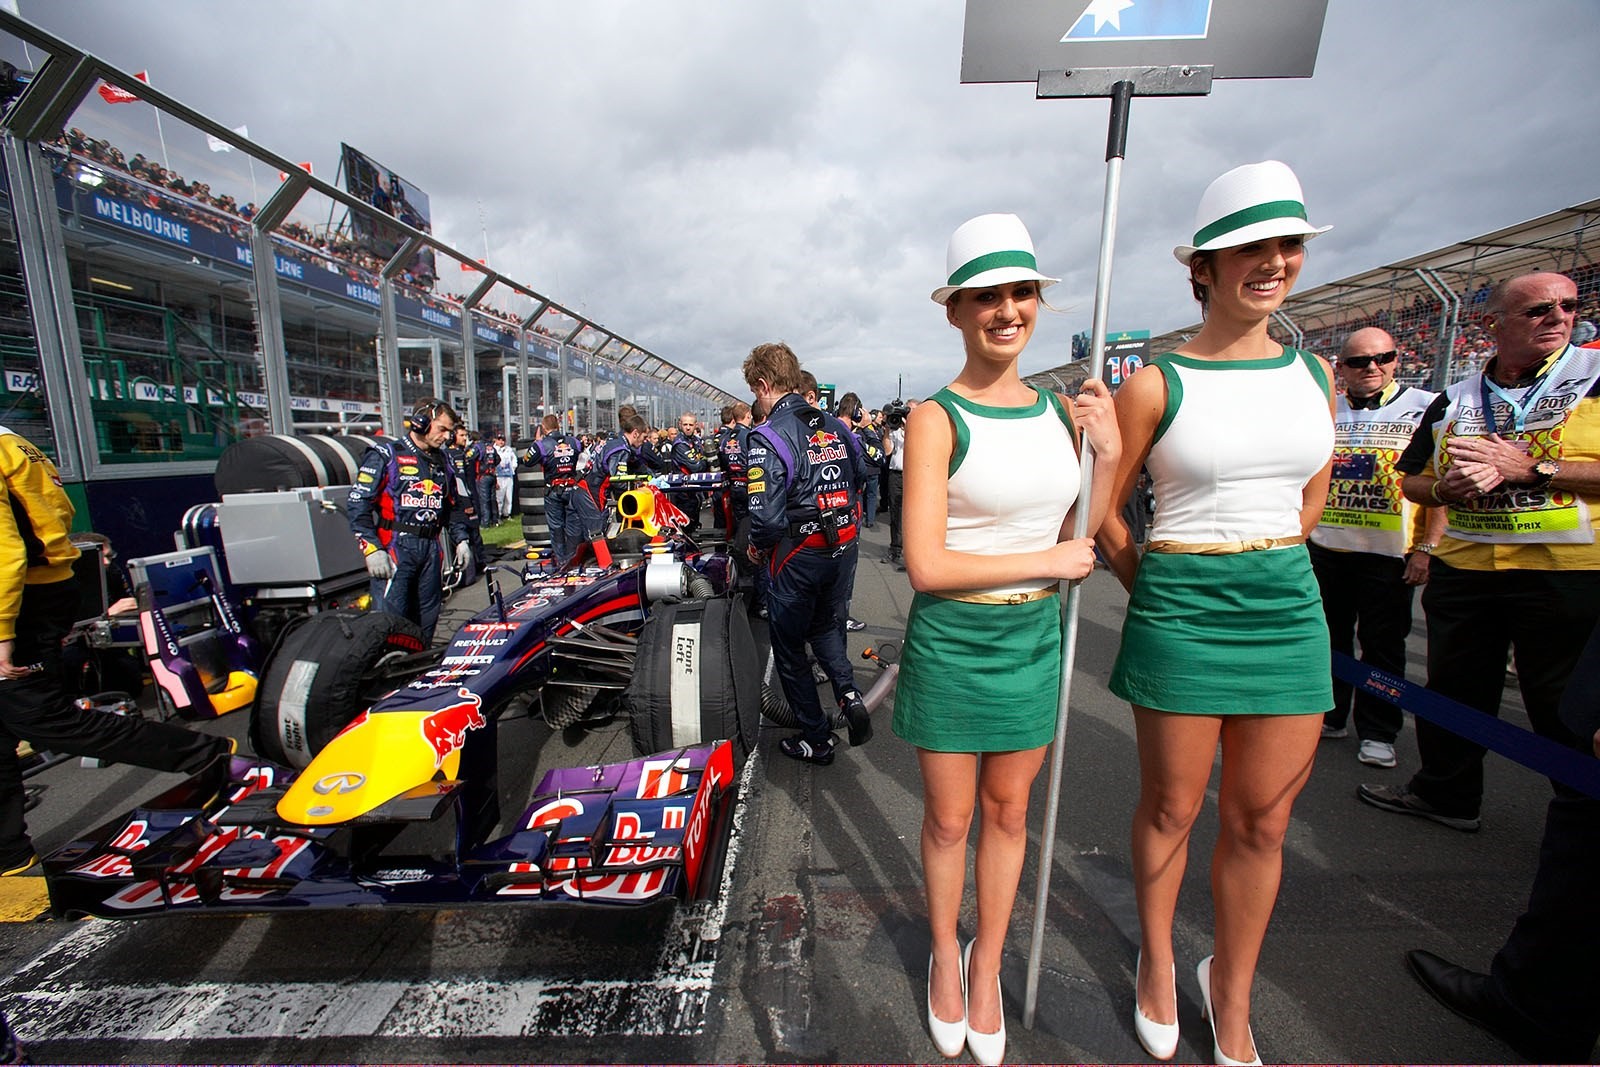 Formula 1 grid girls at Melbourne, Australia, in 2013. 